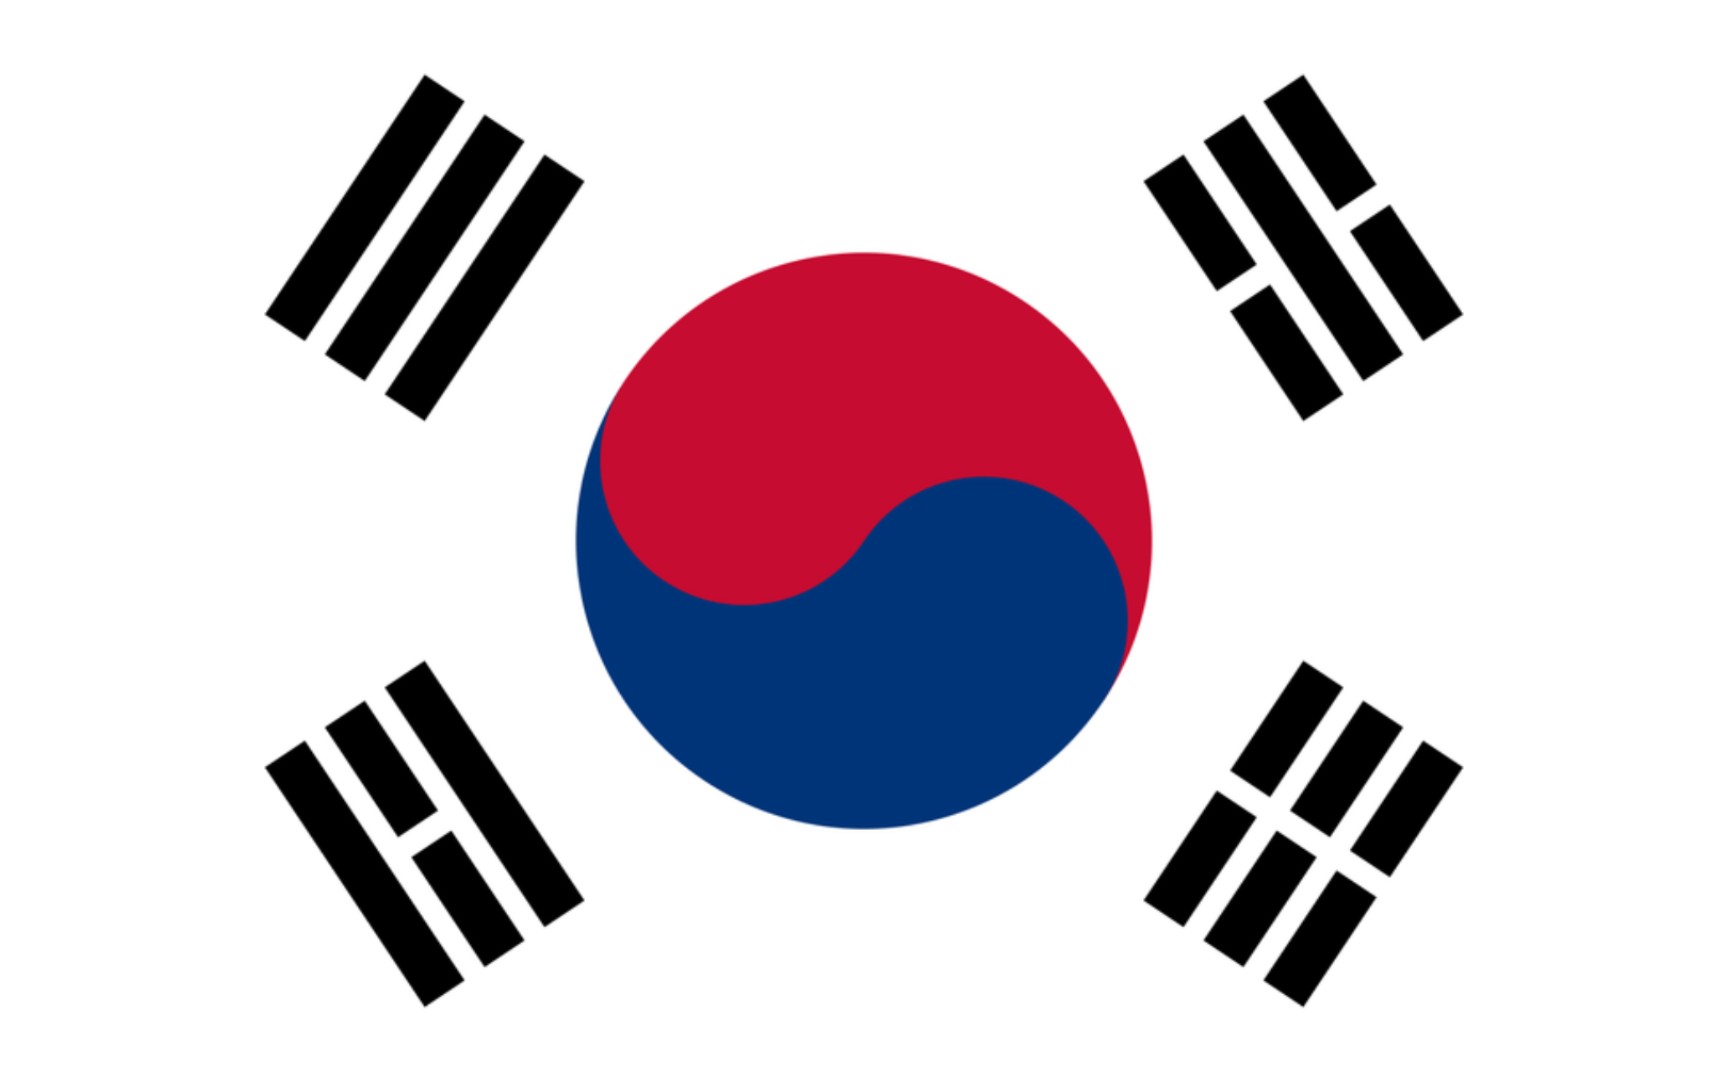 朝鲜国旗壁纸图片